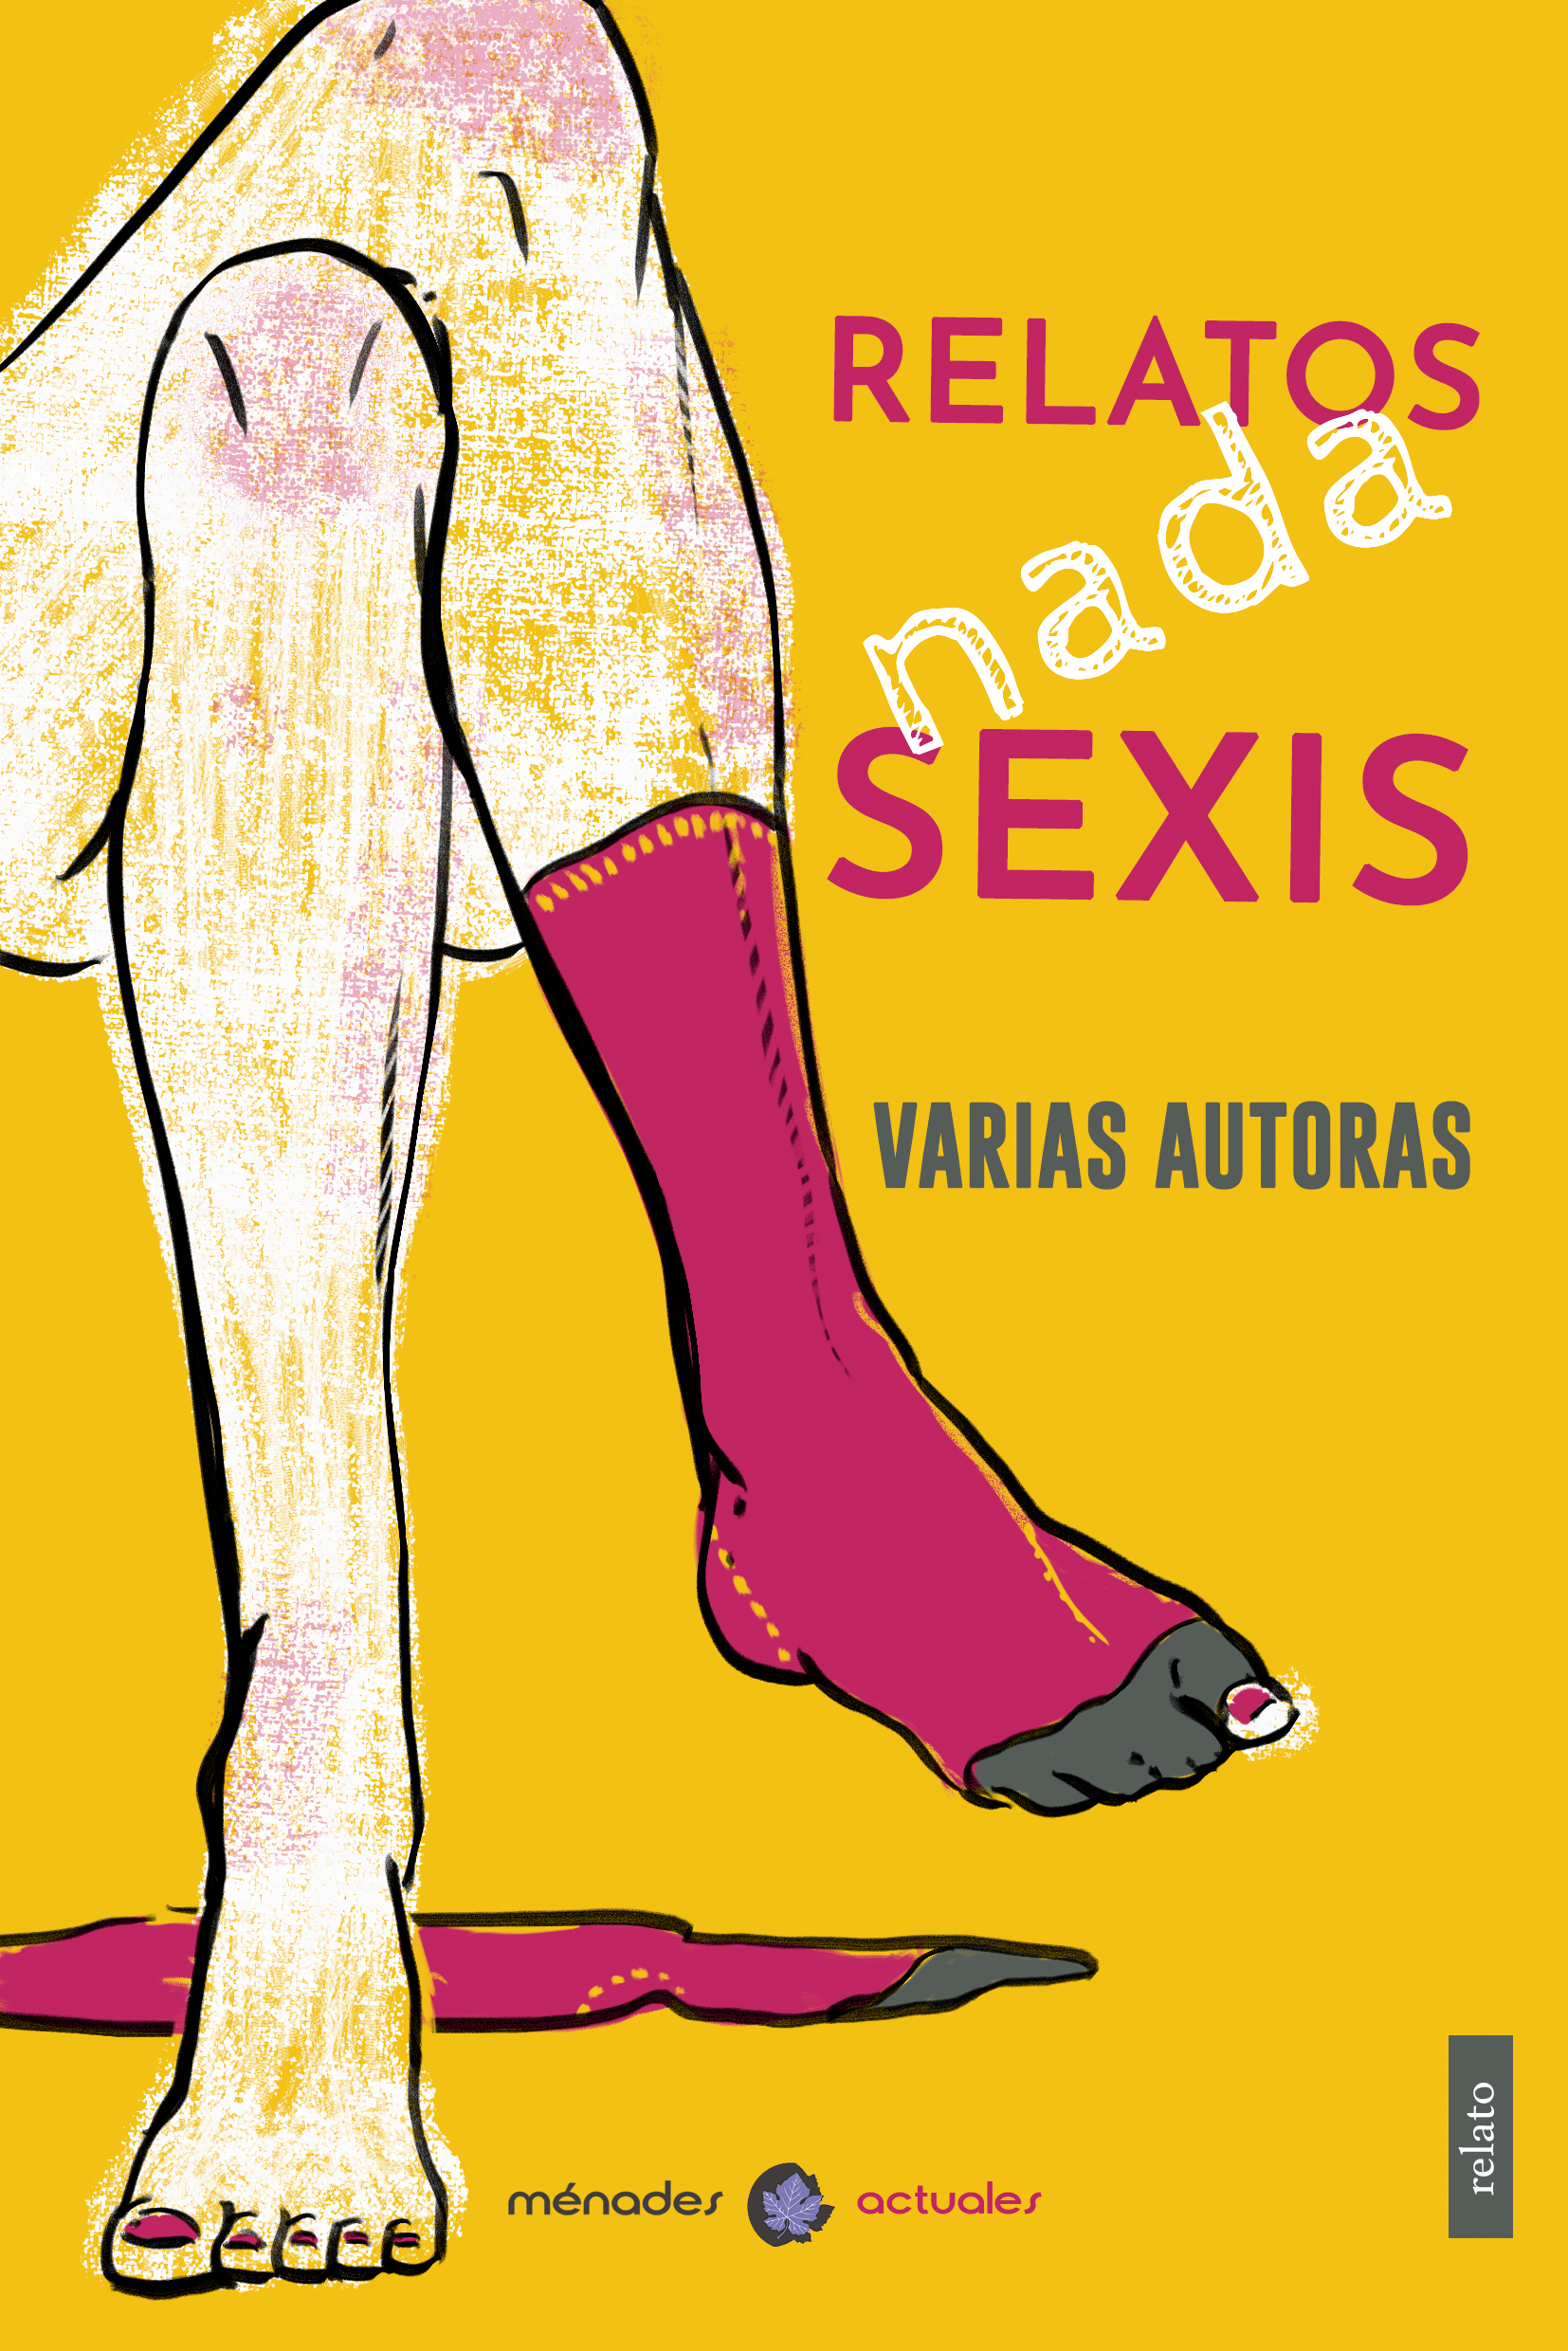 Relatos nada sexis, una antología que busca deconstruir la literatura erótico-romántica